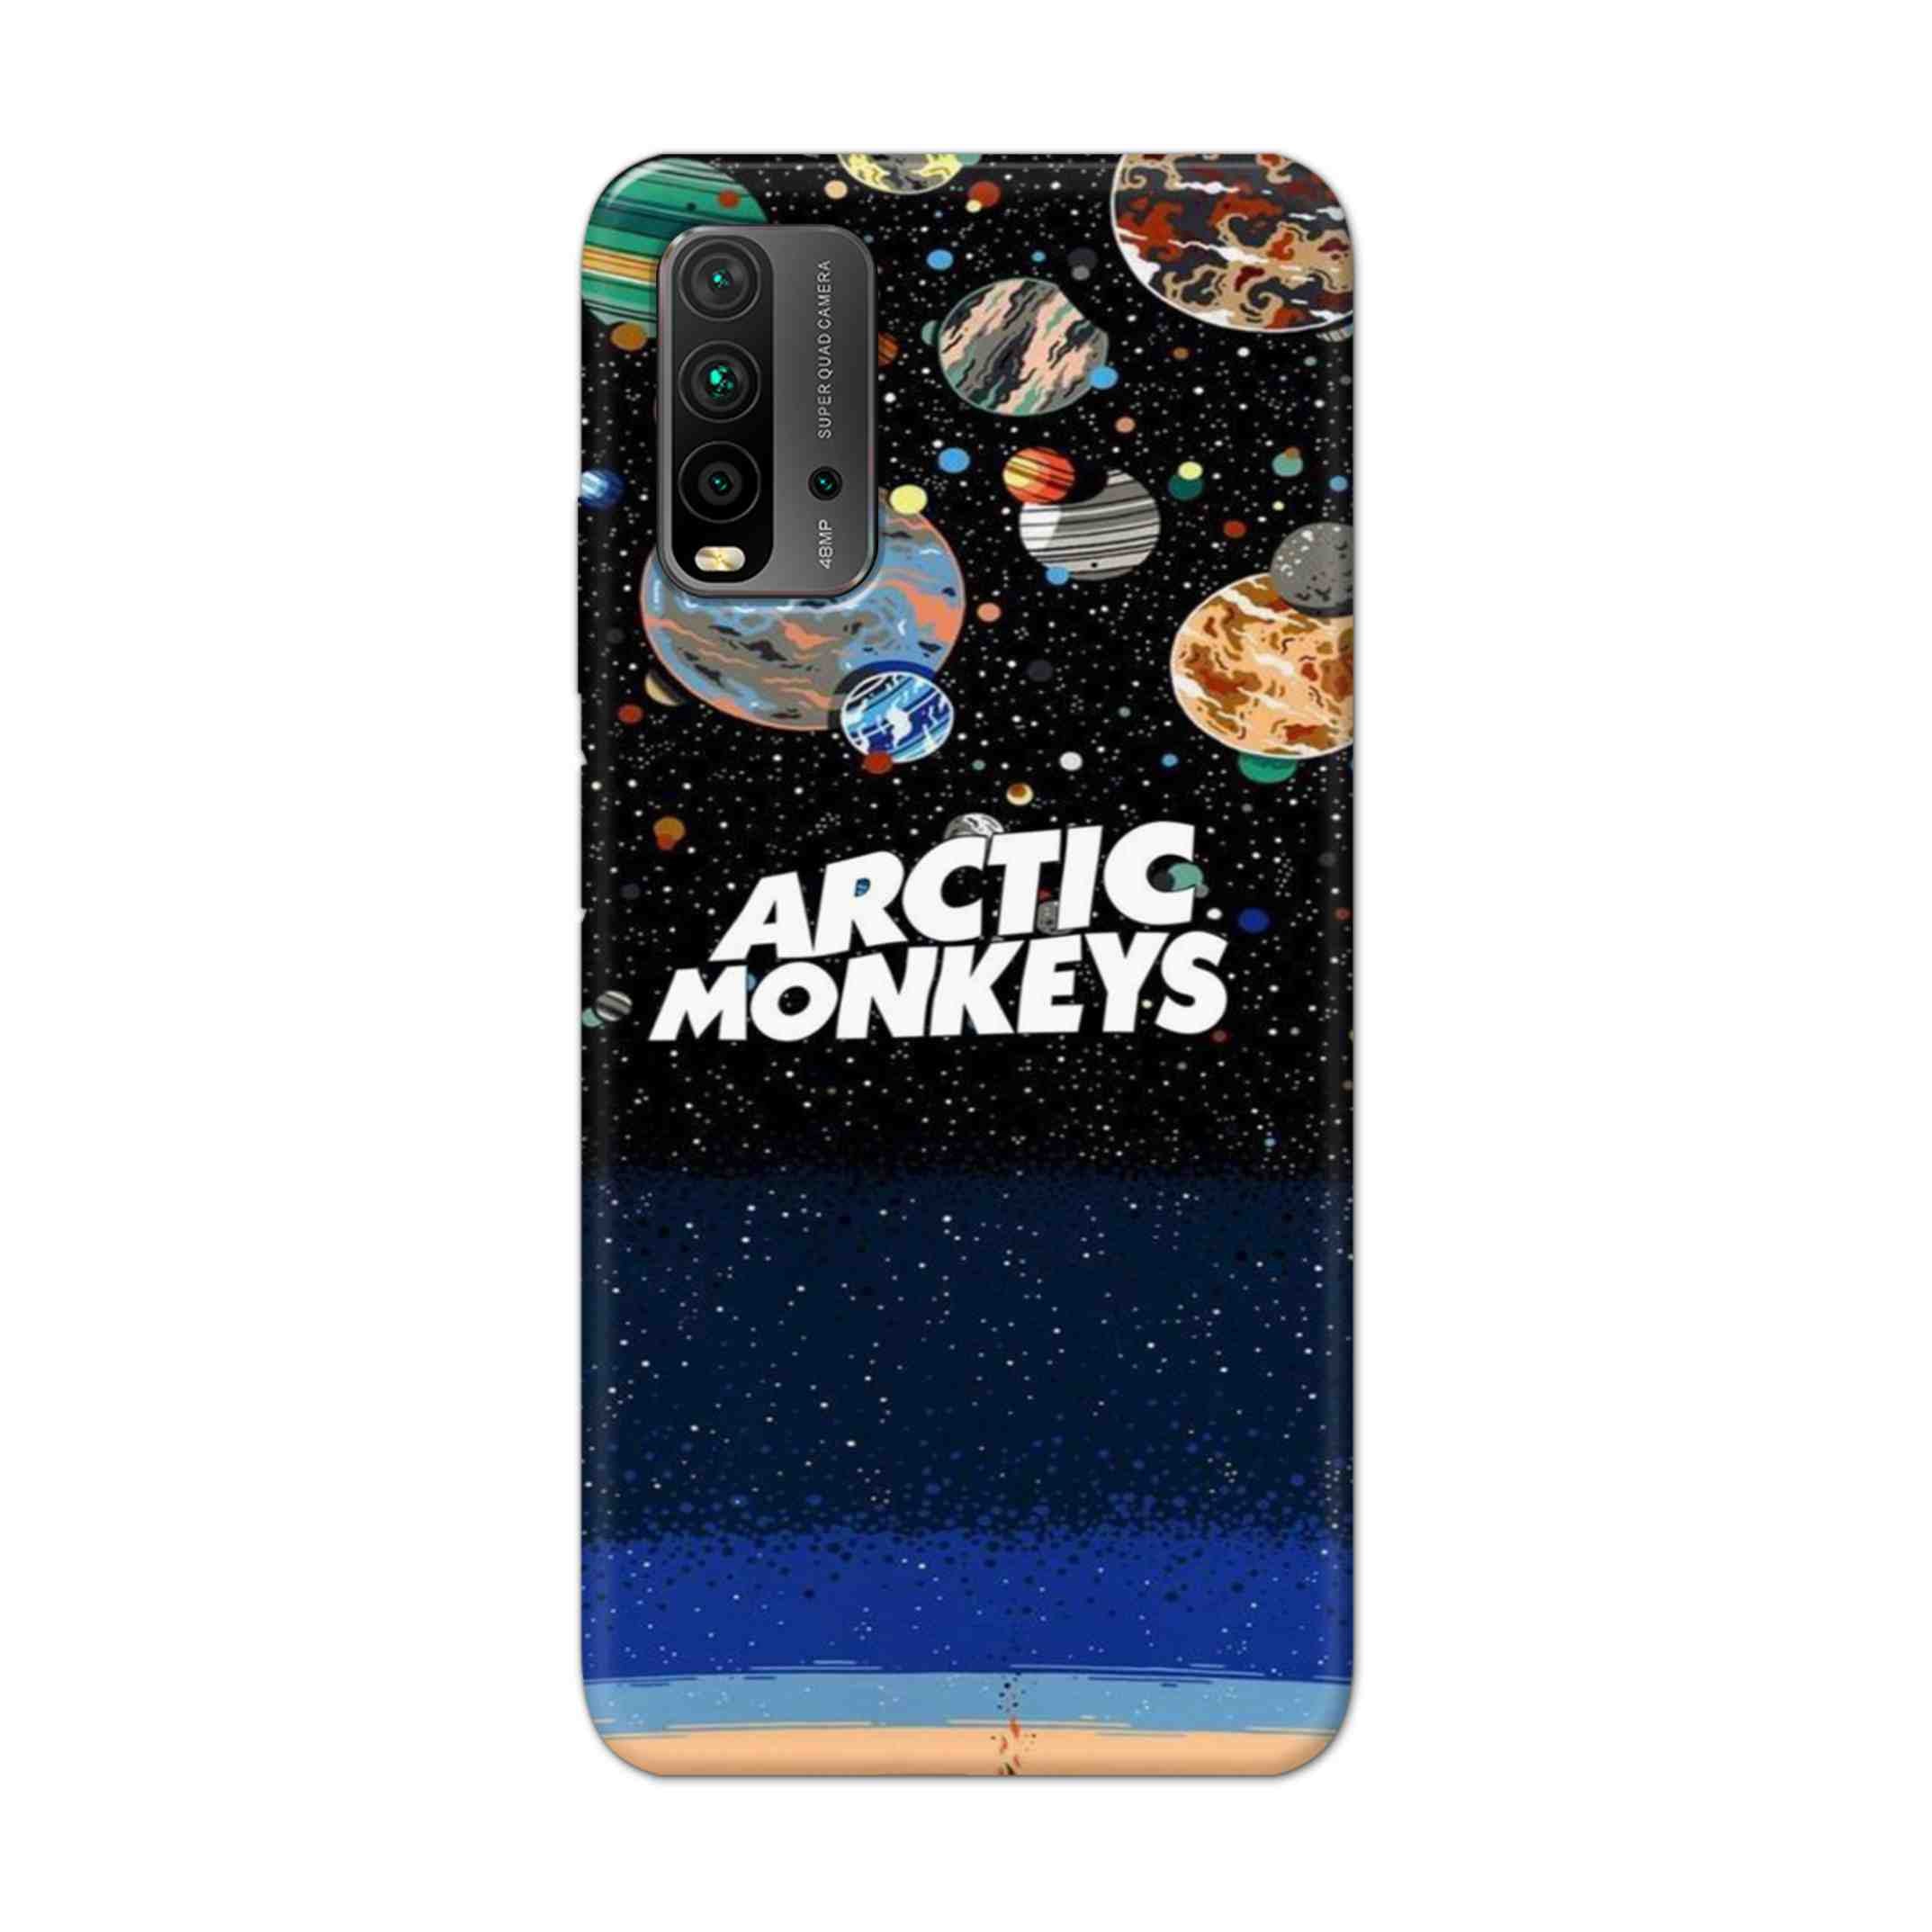 Buy Artic Monkeys Hard Back Mobile Phone Case Cover For Redmi 9 Power Online